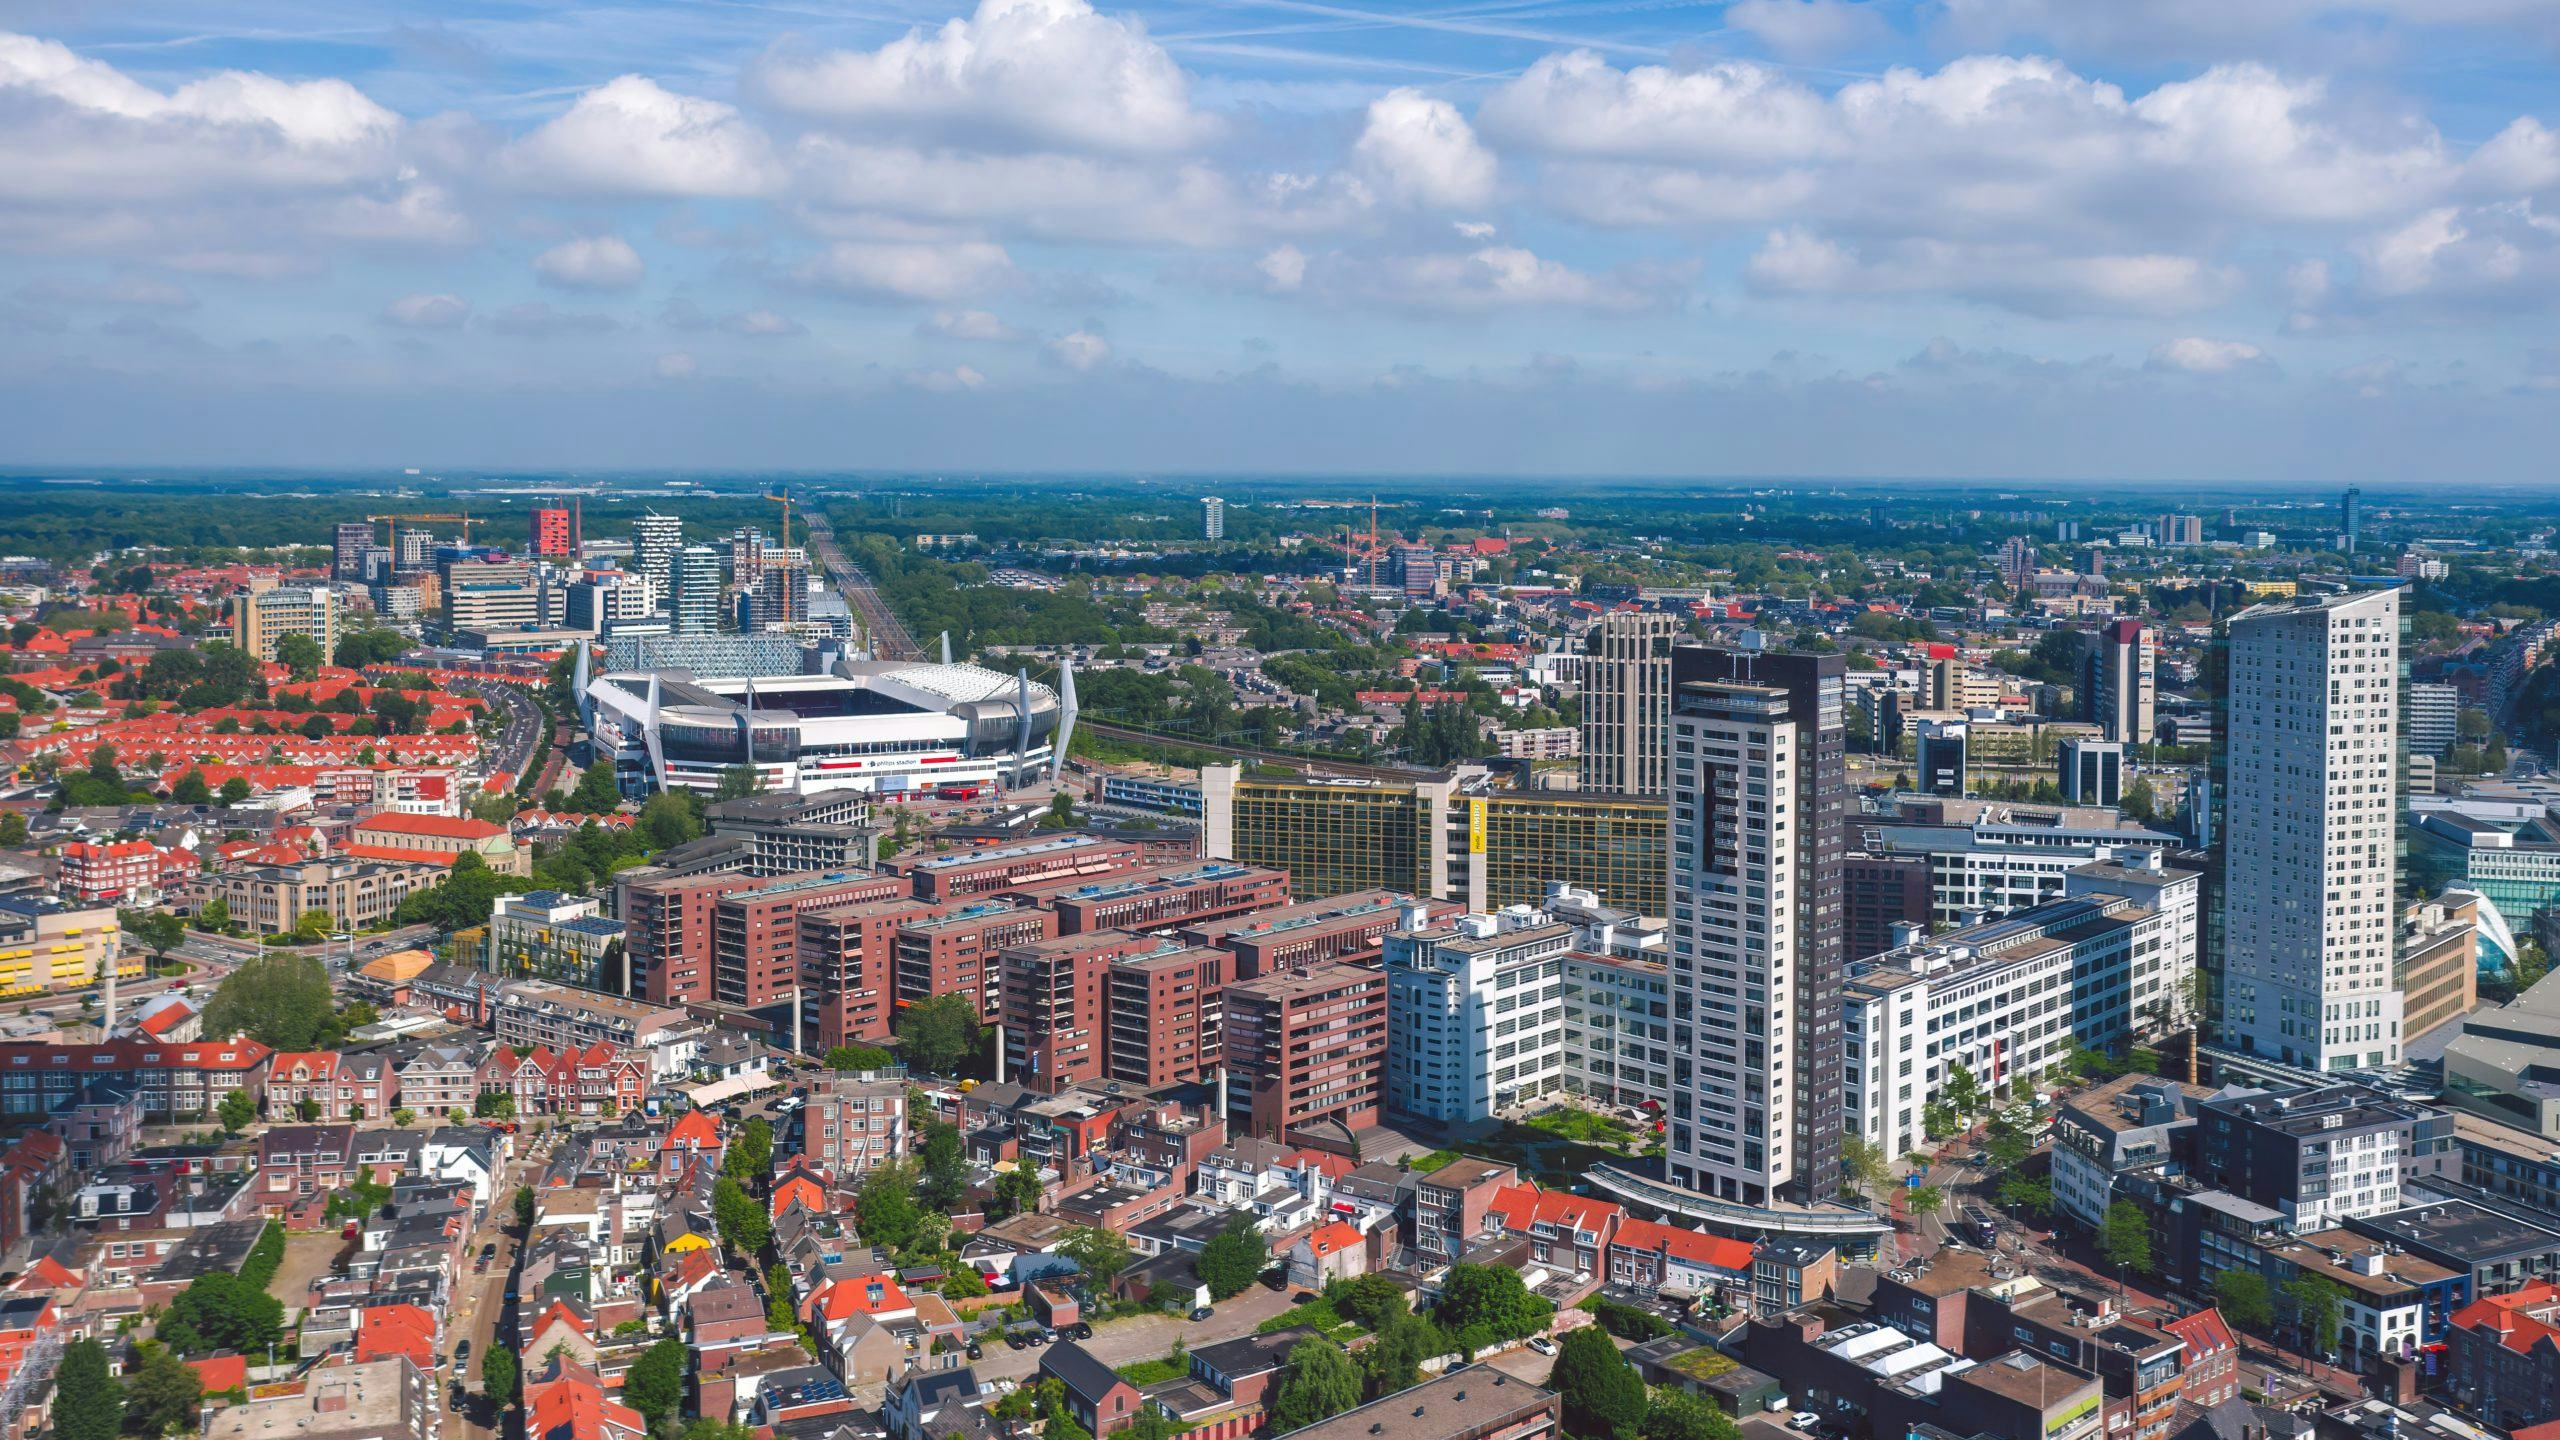 Deze winkelcentra gaat Eindhoven omtoveren tot woonwijken